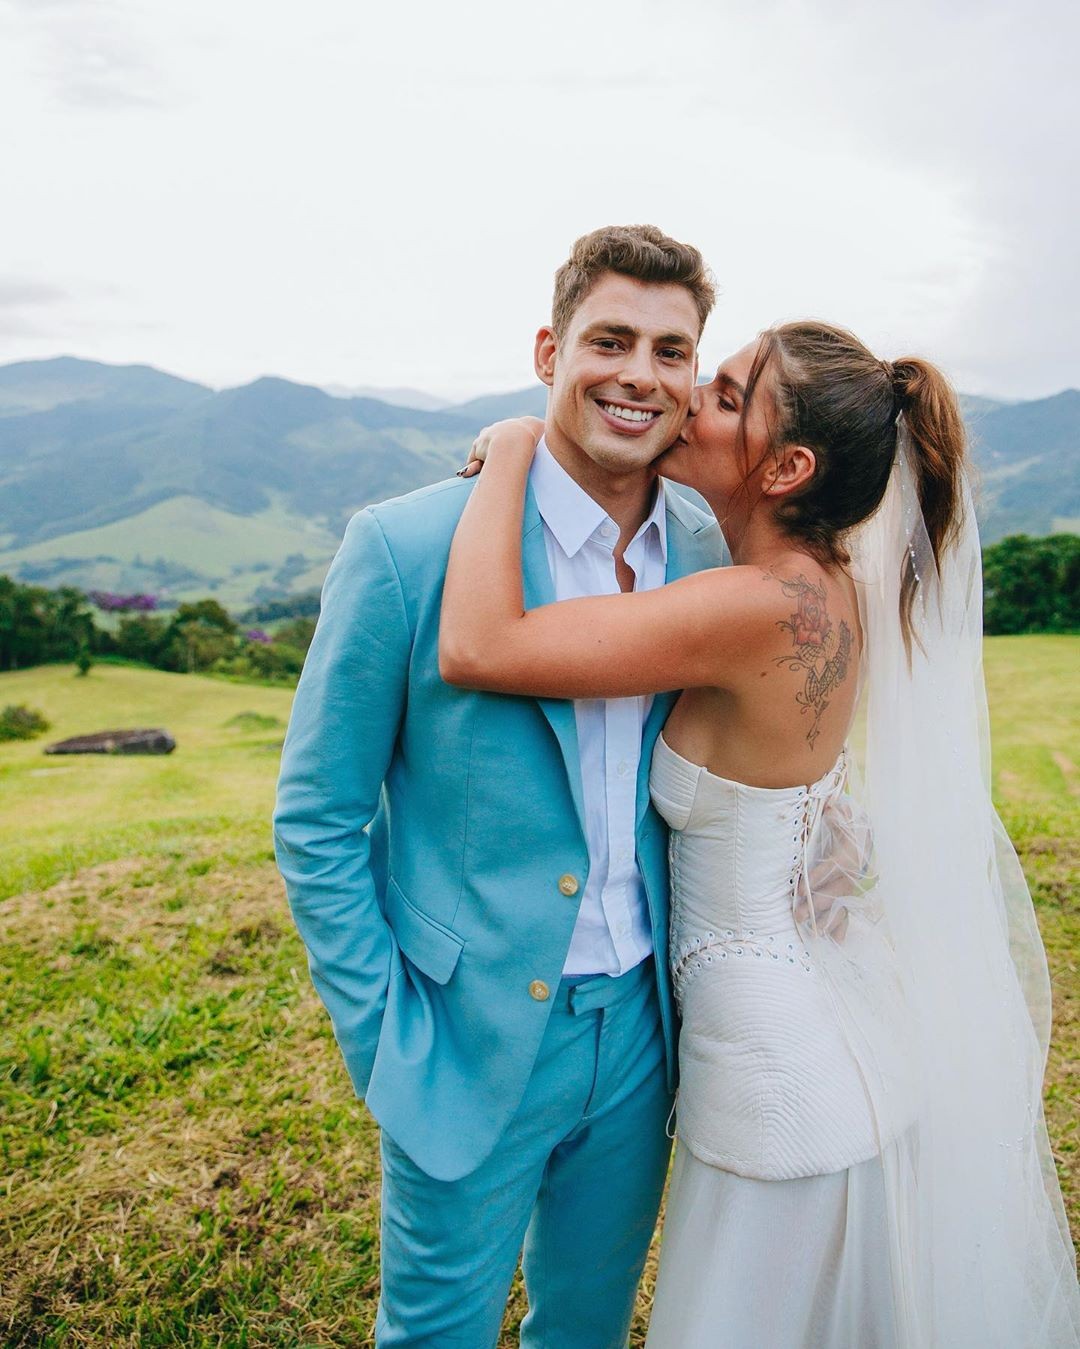 Mariana Goldfarb mostra fotos do casamento com Cauã Reymond (Foto: Reprodução/Instagram)